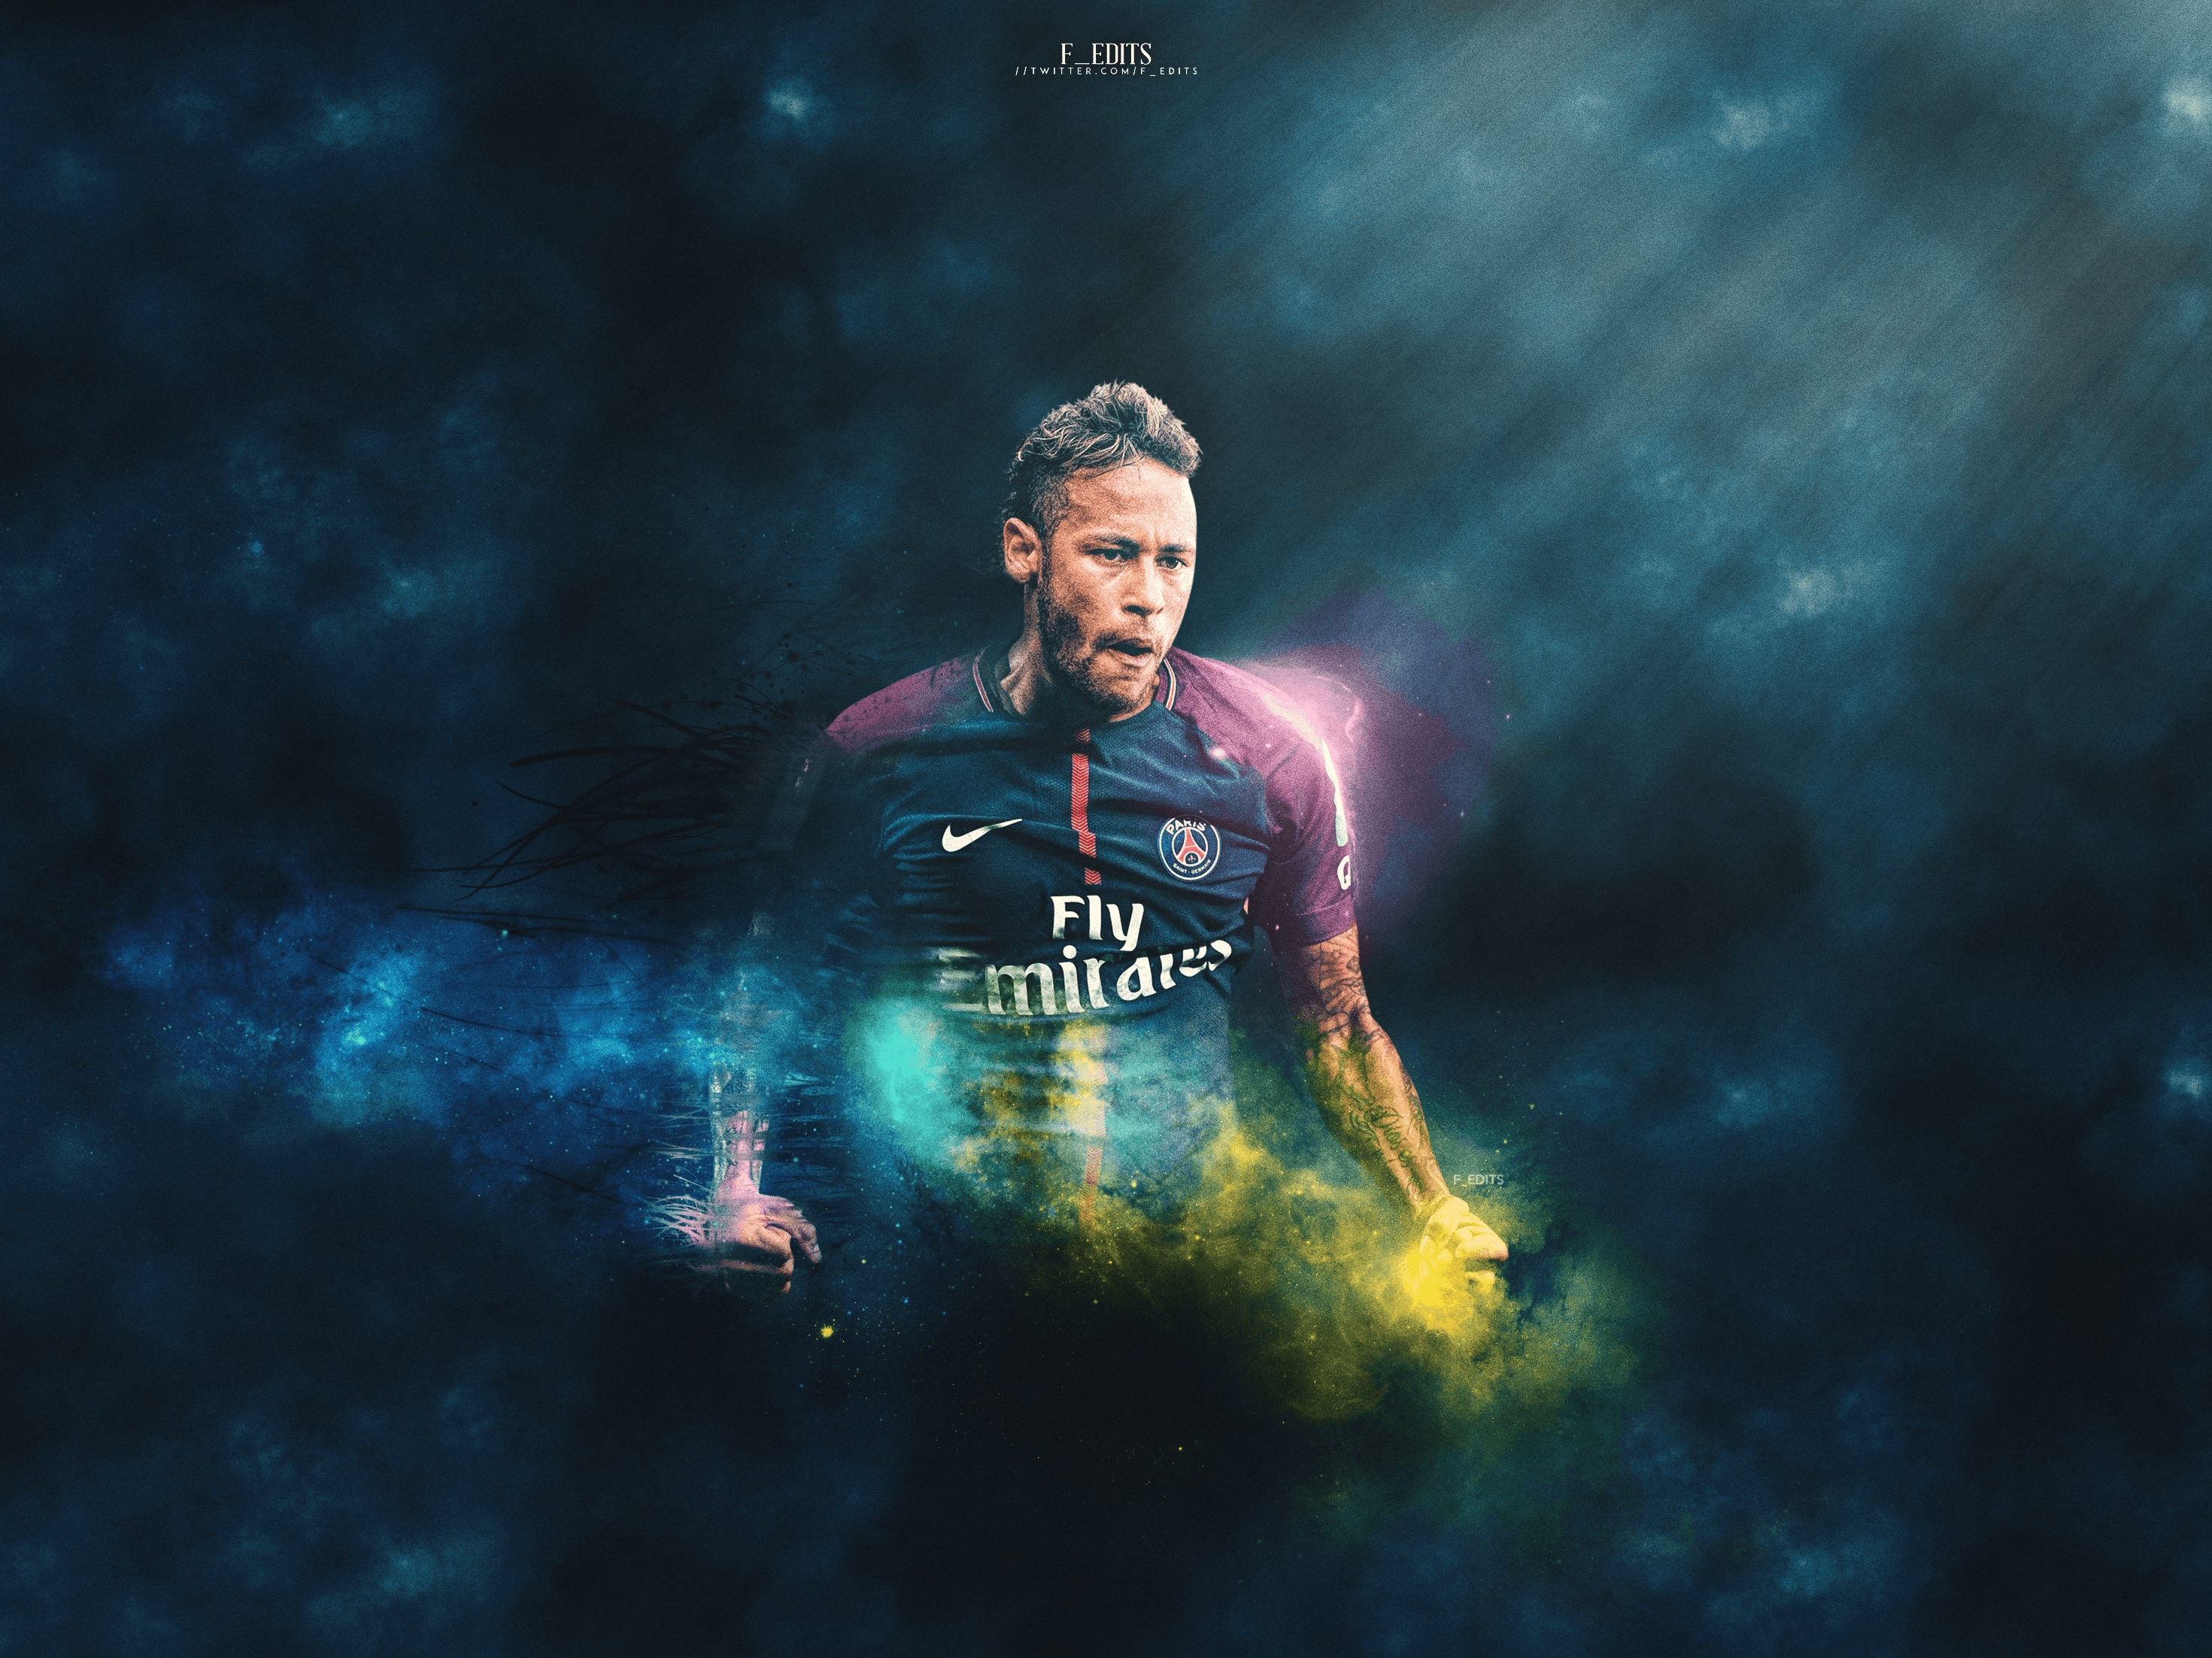 Beautiful Neymar Paris Saint Germain Wallpaper Great Foofball Club